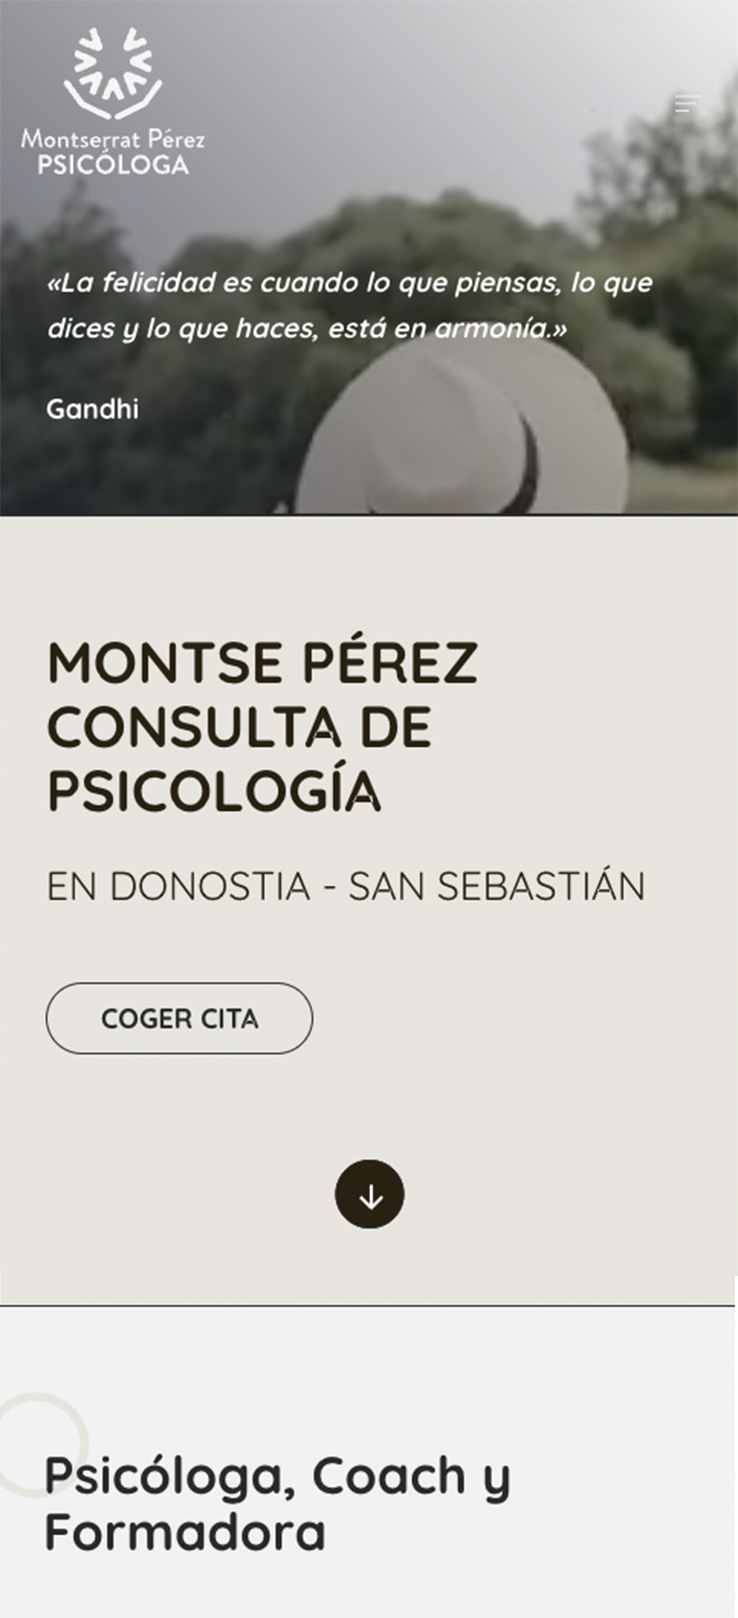 ▷ Ejemplo de página web para psicóloga [A medida]